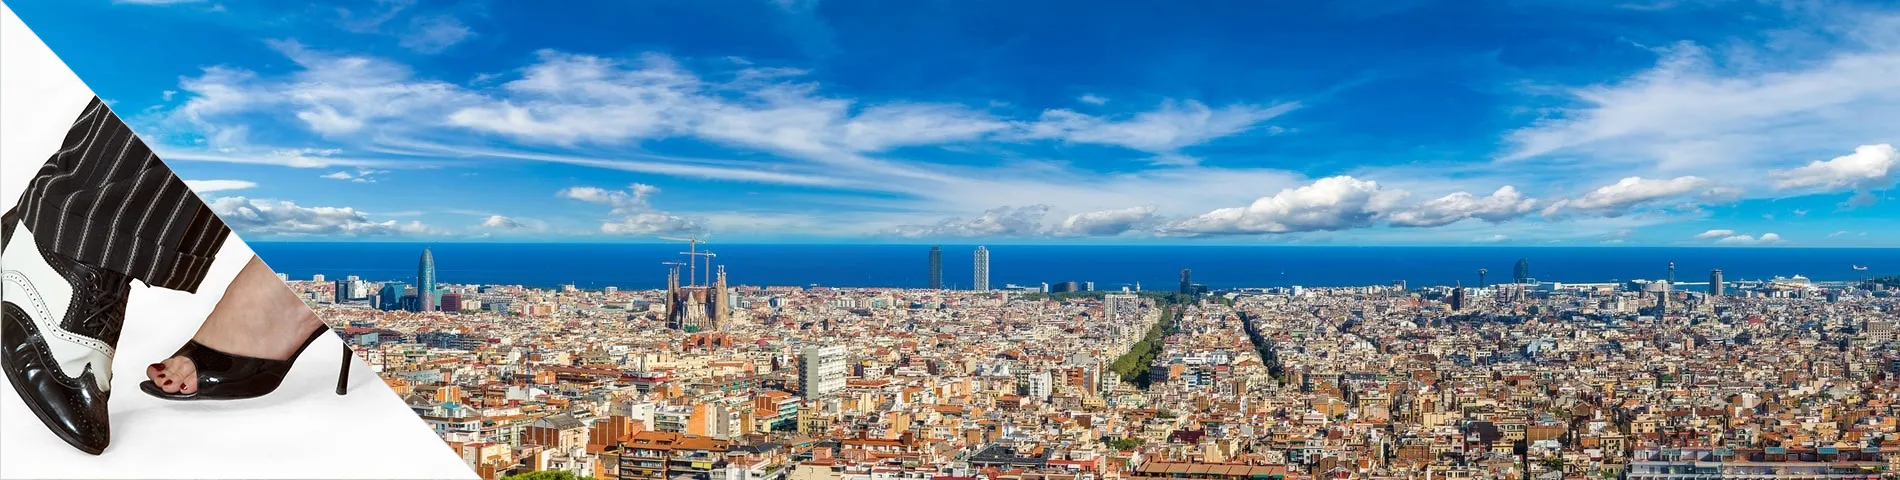 برشلونة - تعلم اللغة والرقص